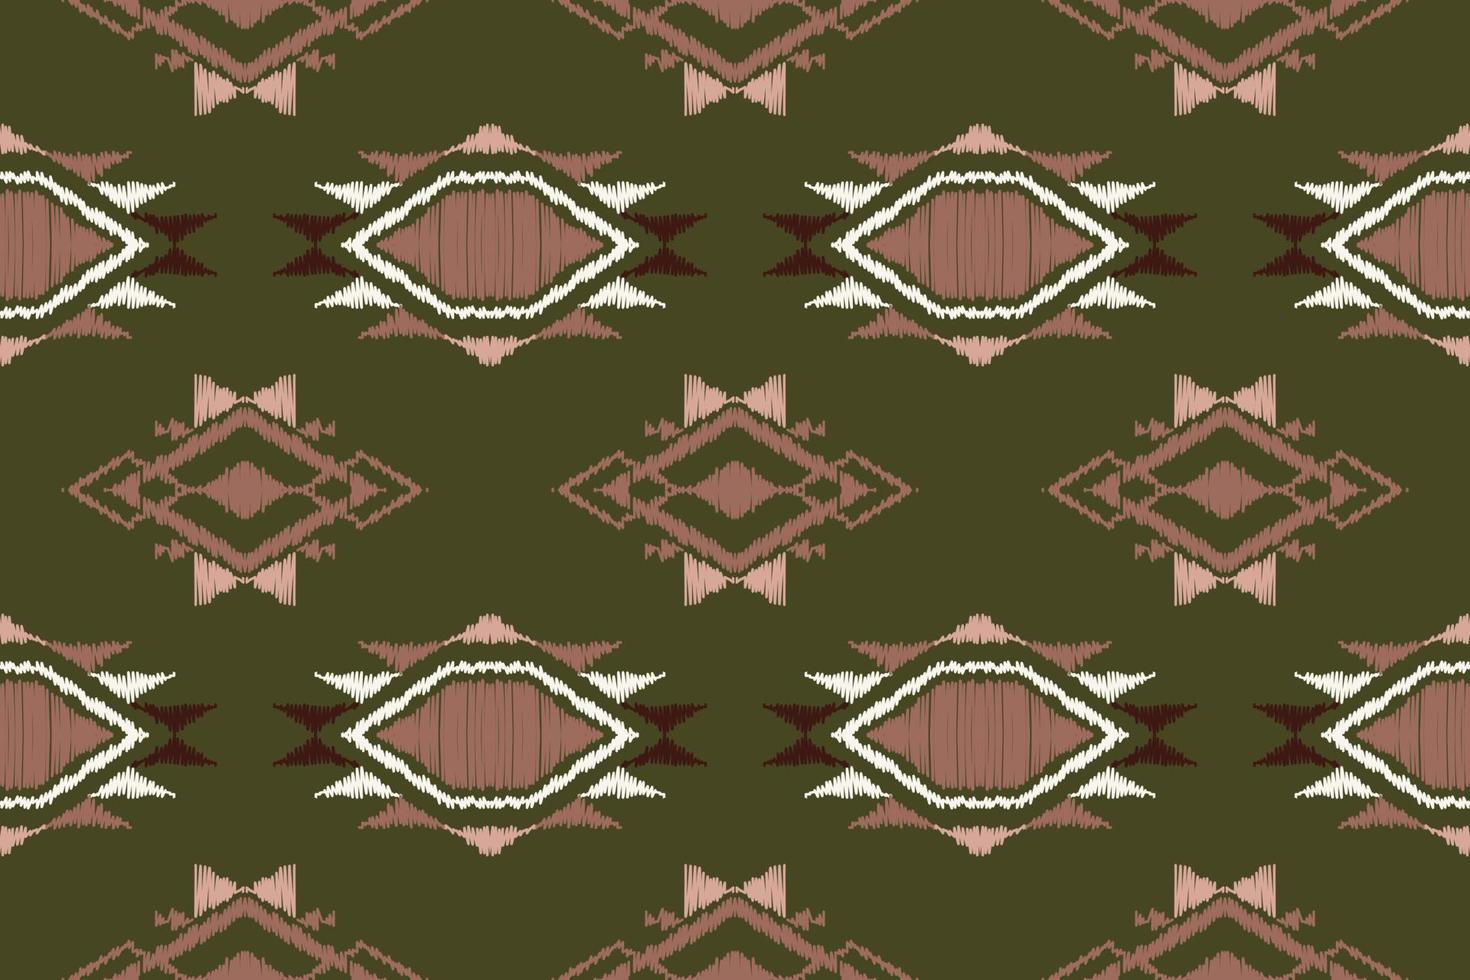 ikat azteca, motivo ikat azteca gente bordado, mexicano azteca geométrico rombo Arte ornamento impresión. digital archivo diseño para impresión textura,tela,sari,sari,alfombra,alfombra,batik vector